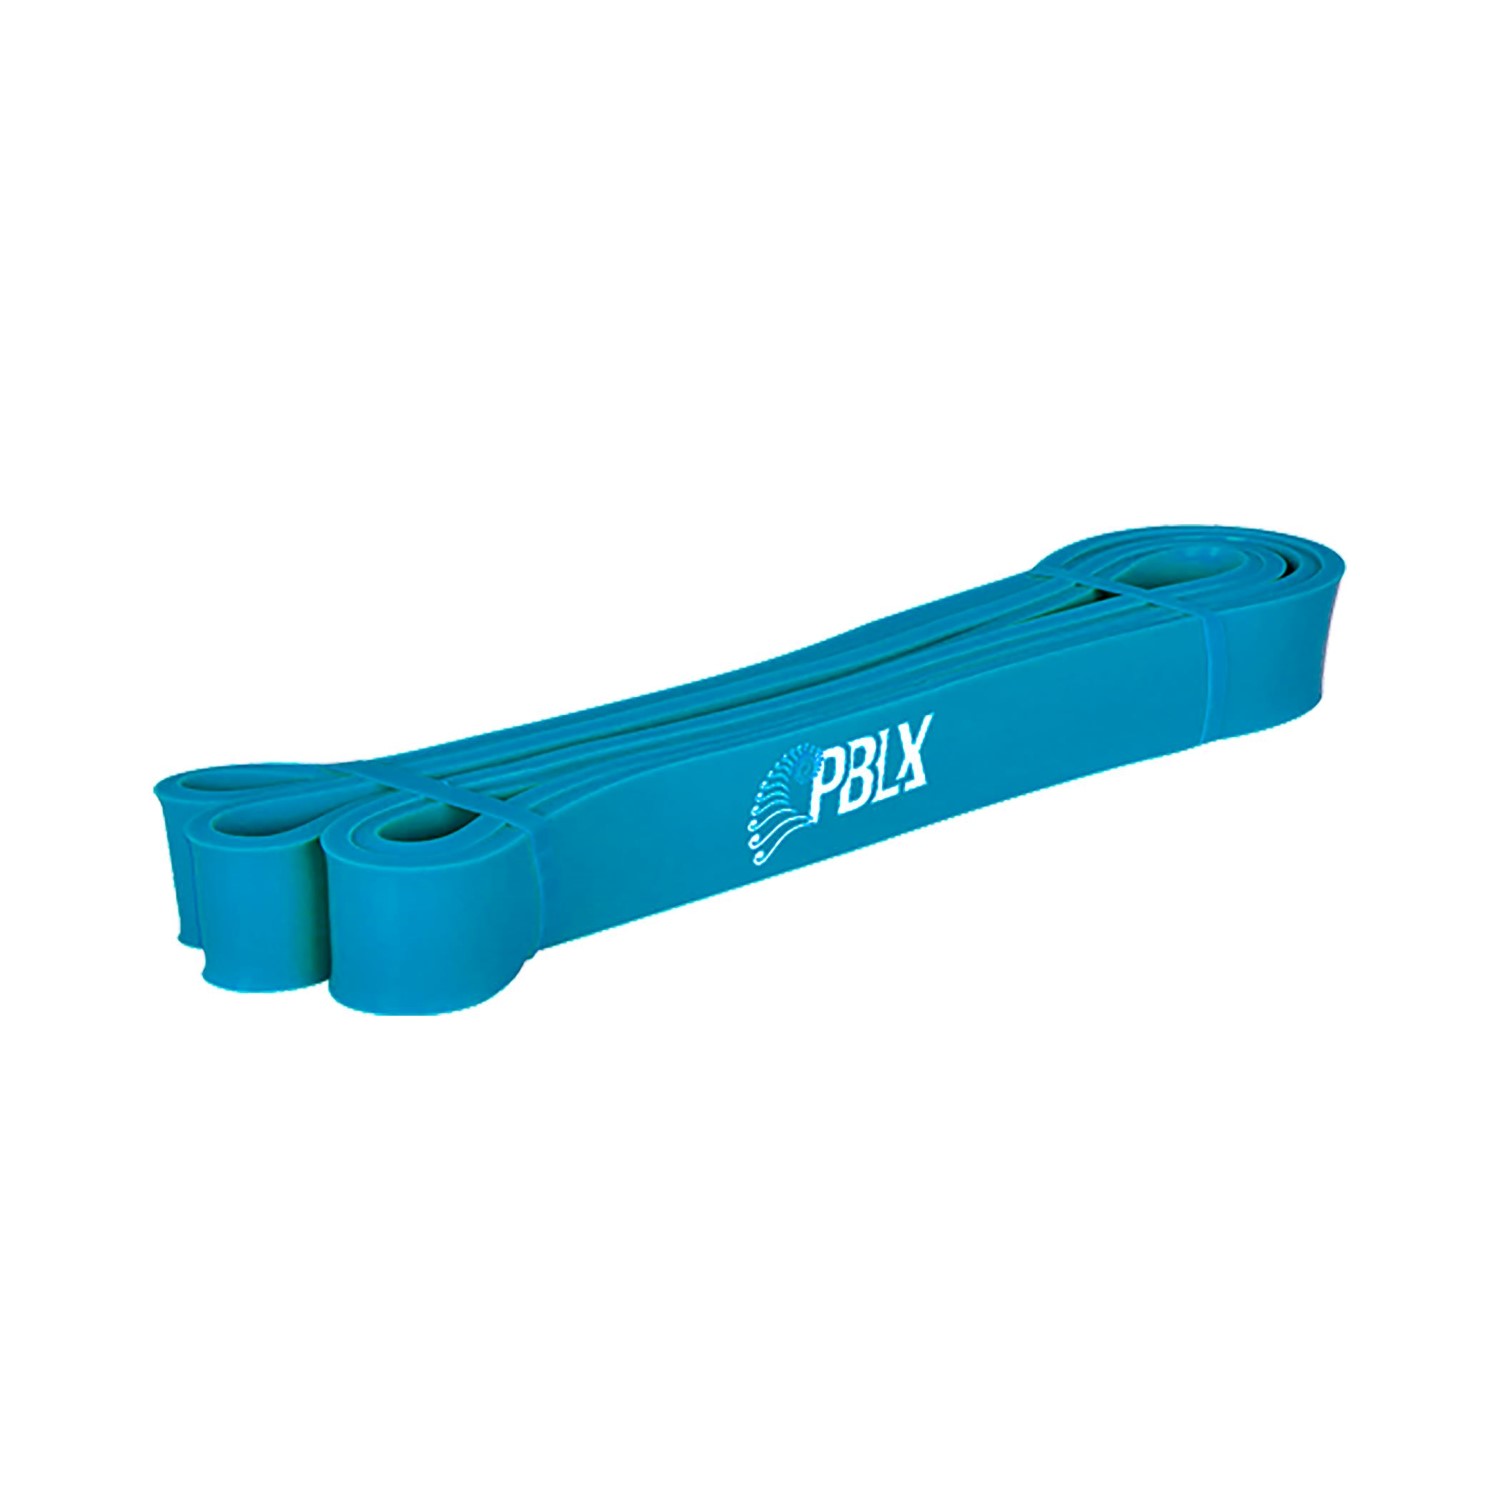 Dynaflex Pblx Body Bands Weight 20-25lbs